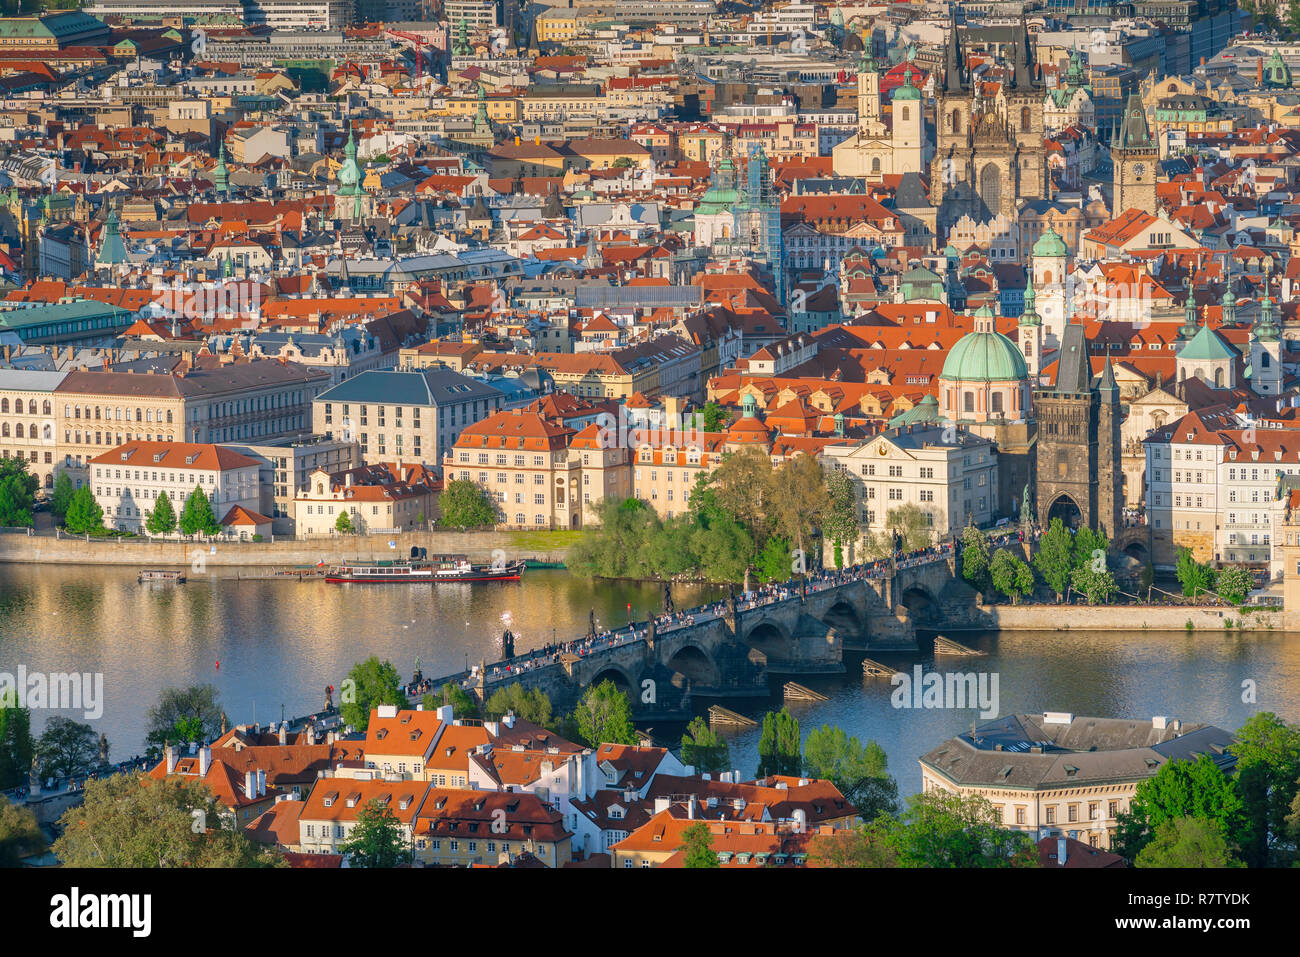 Il Ponte Carlo a Praga, vista aerea del Ponte Carlo e edifici della Città Vecchia - Stare Mesto - distretto di Praga, Repubblica Ceca. Foto Stock